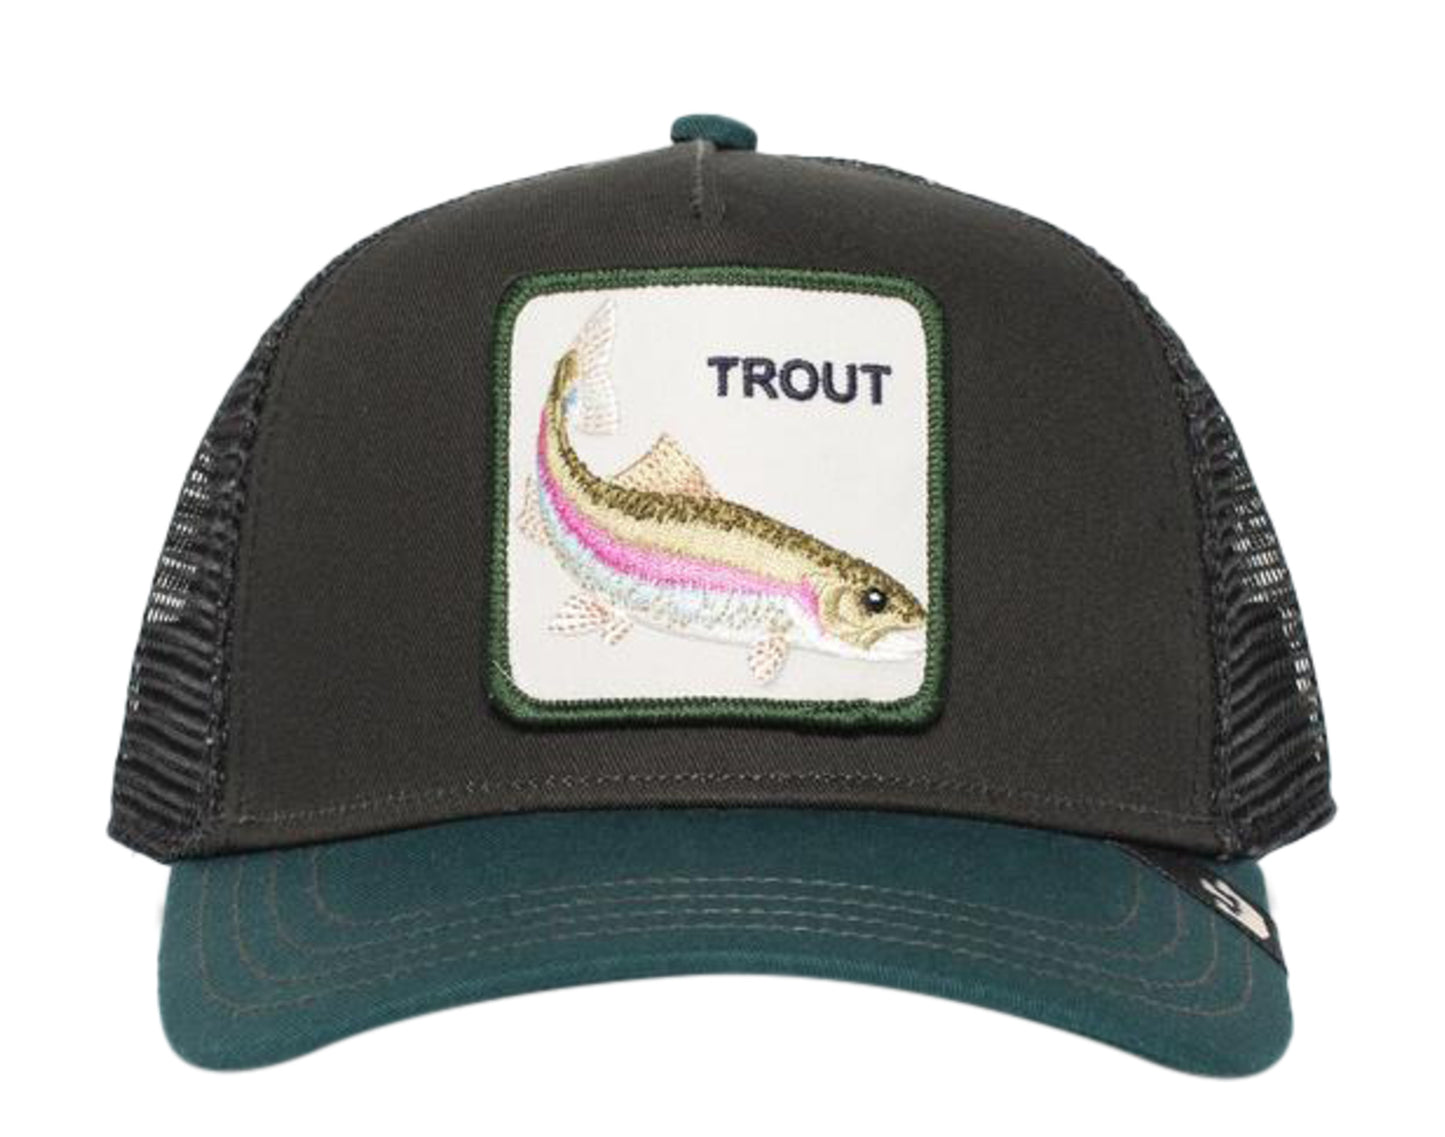 Goorin Bros Trout Black/Green Trucker Hat 101-0487-BLK